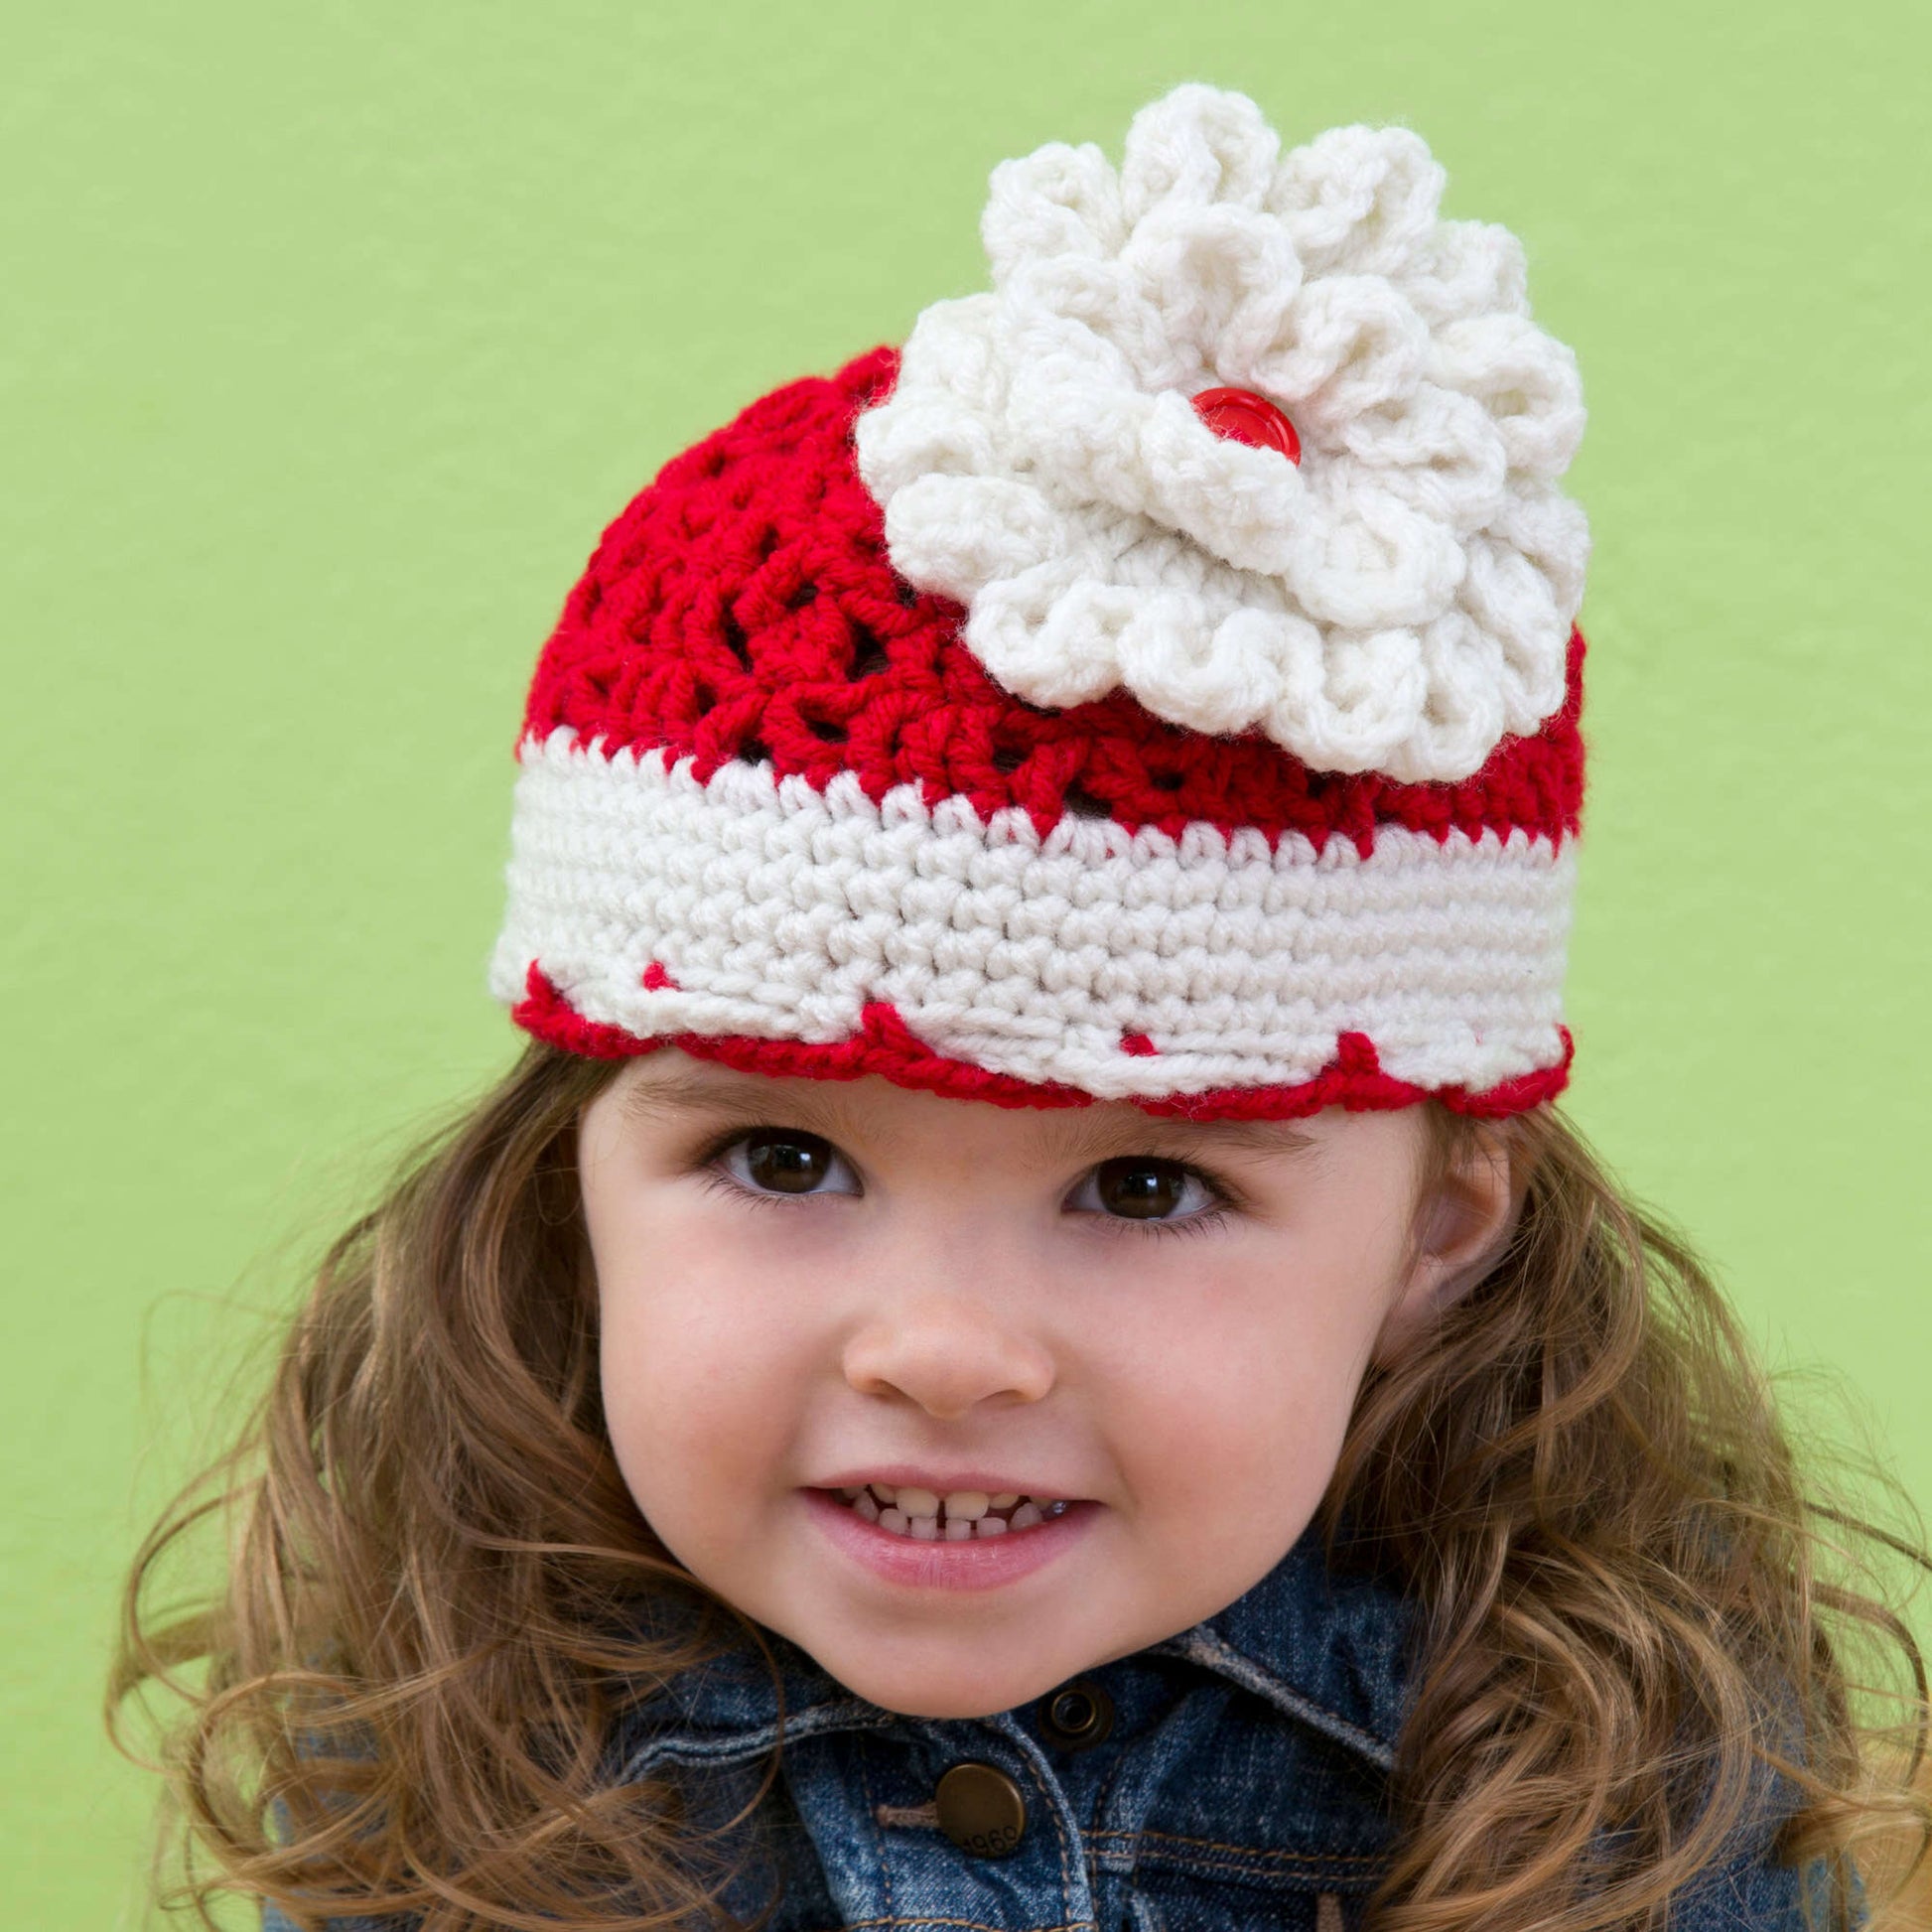 Free Red Heart Crochet Big Bloom Hat Pattern